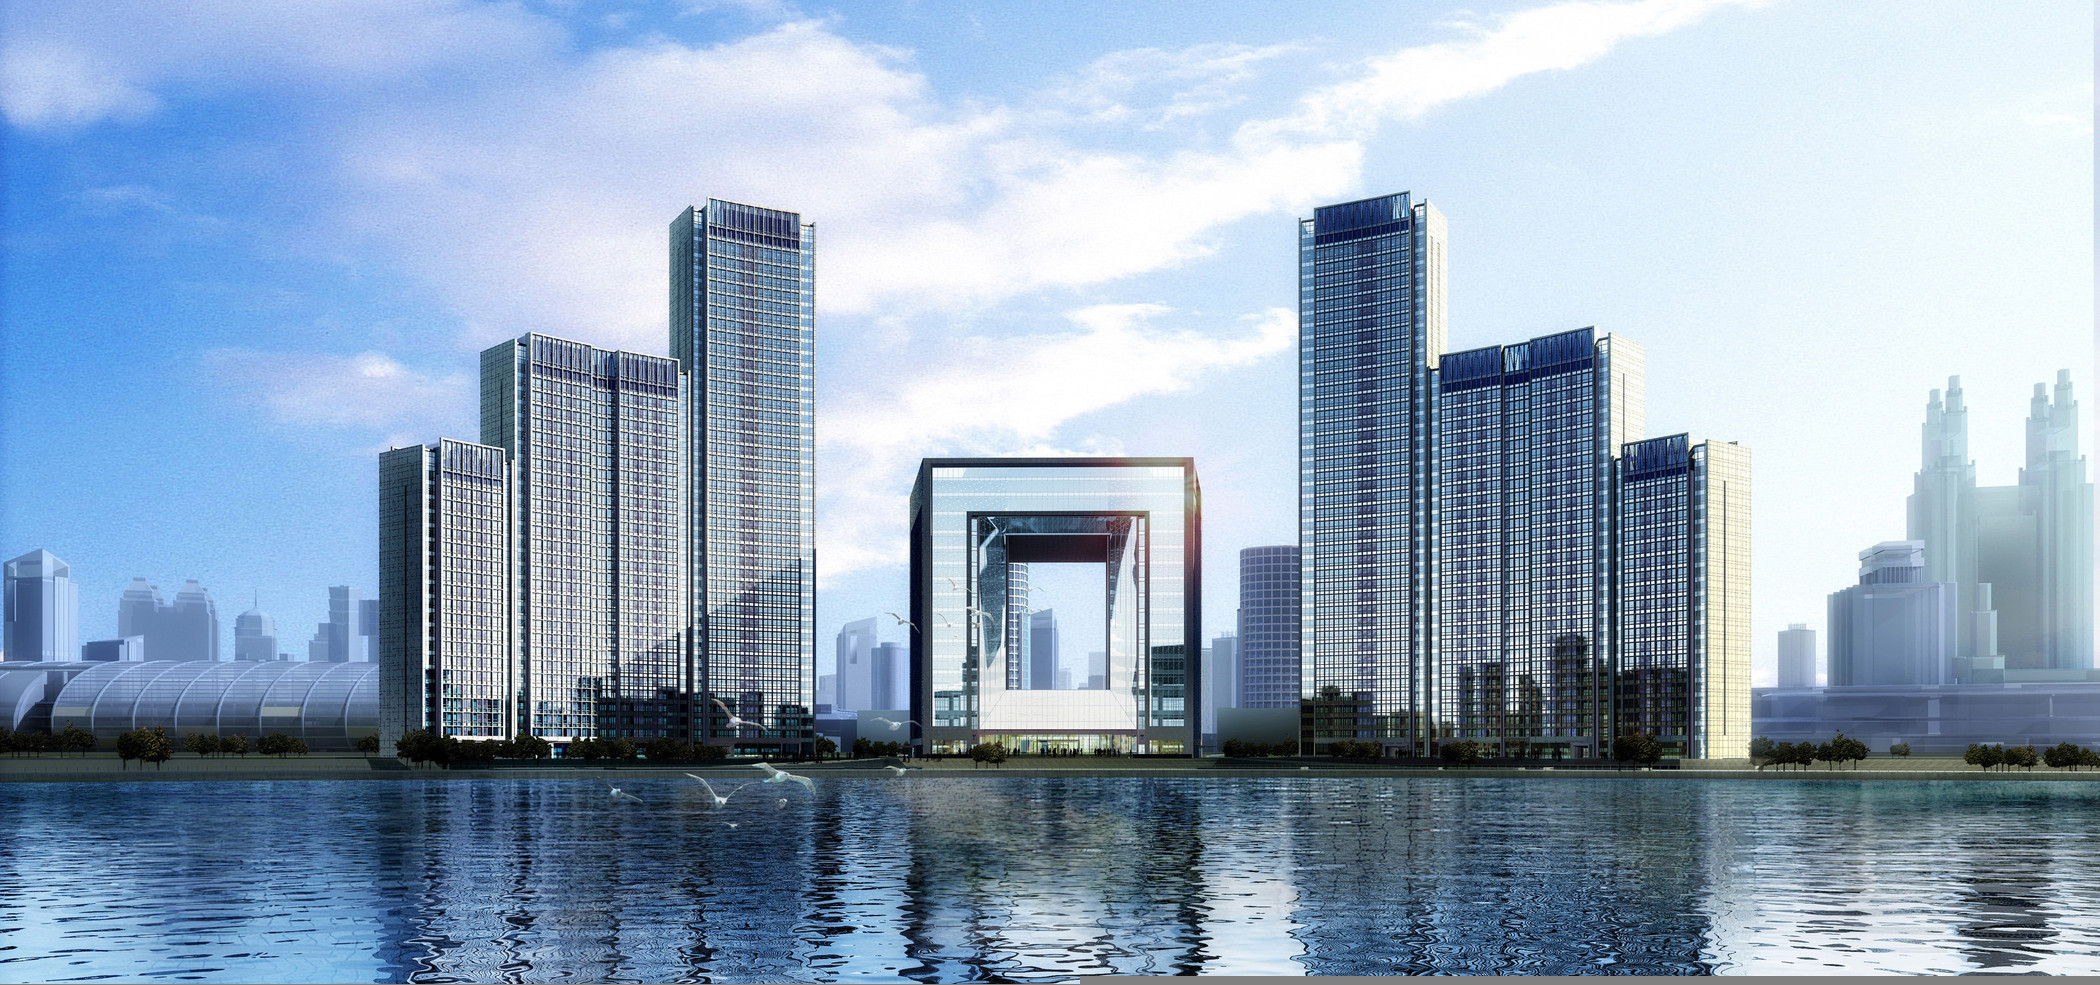 天津瑞吉金融街酒店定于十月盛大开业(图)